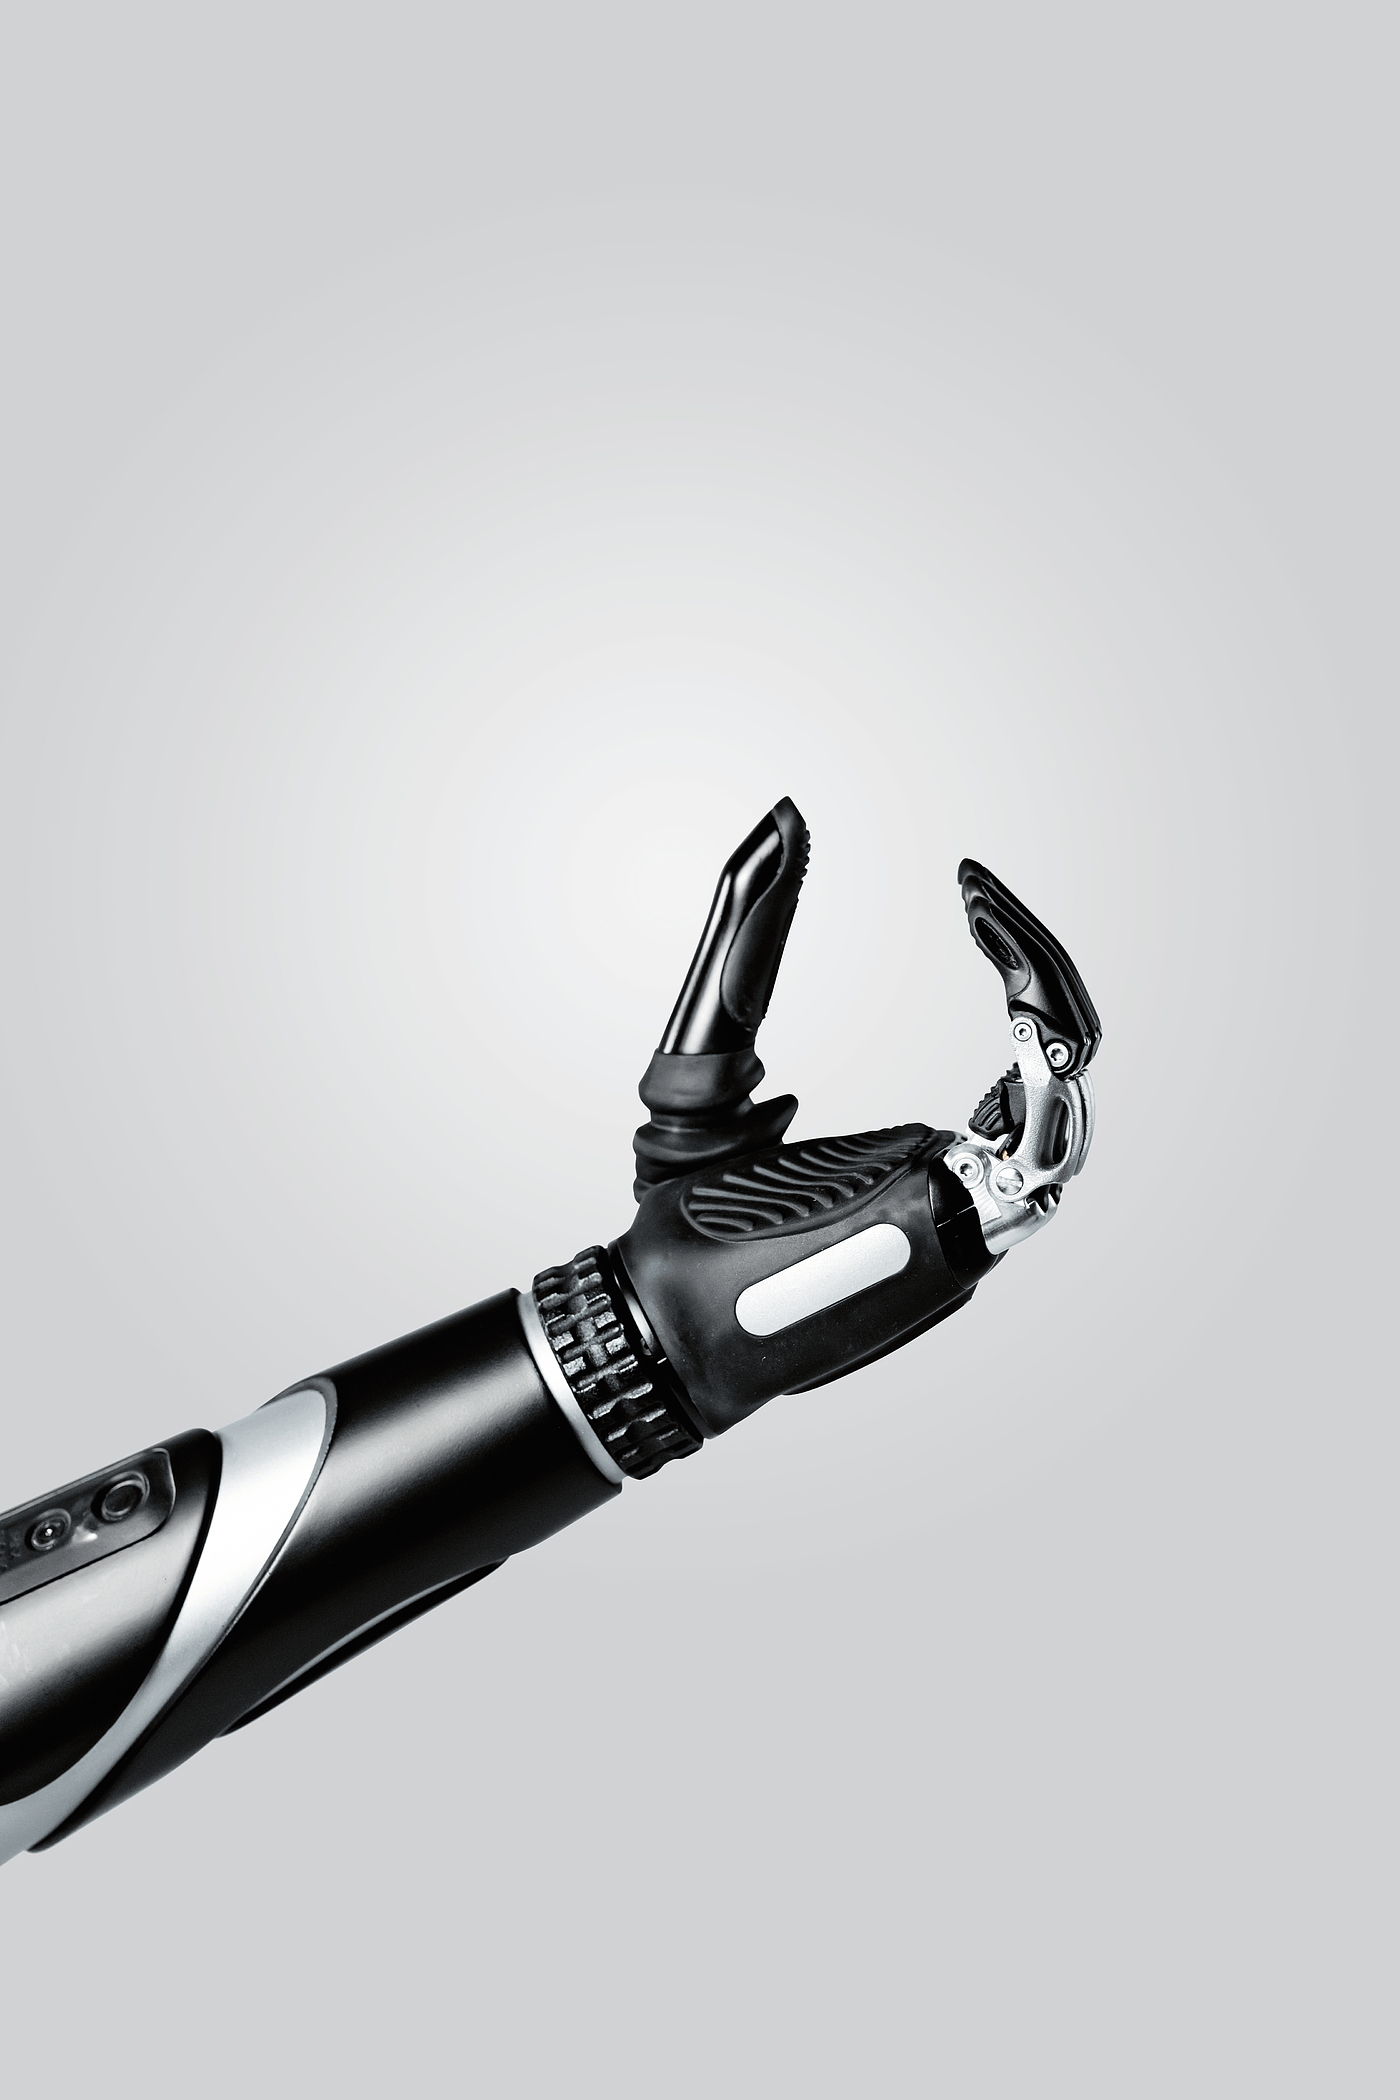 MeHandA，仿生假手，自动化工具，2021红点产品设计大奖，假肢，义肢，